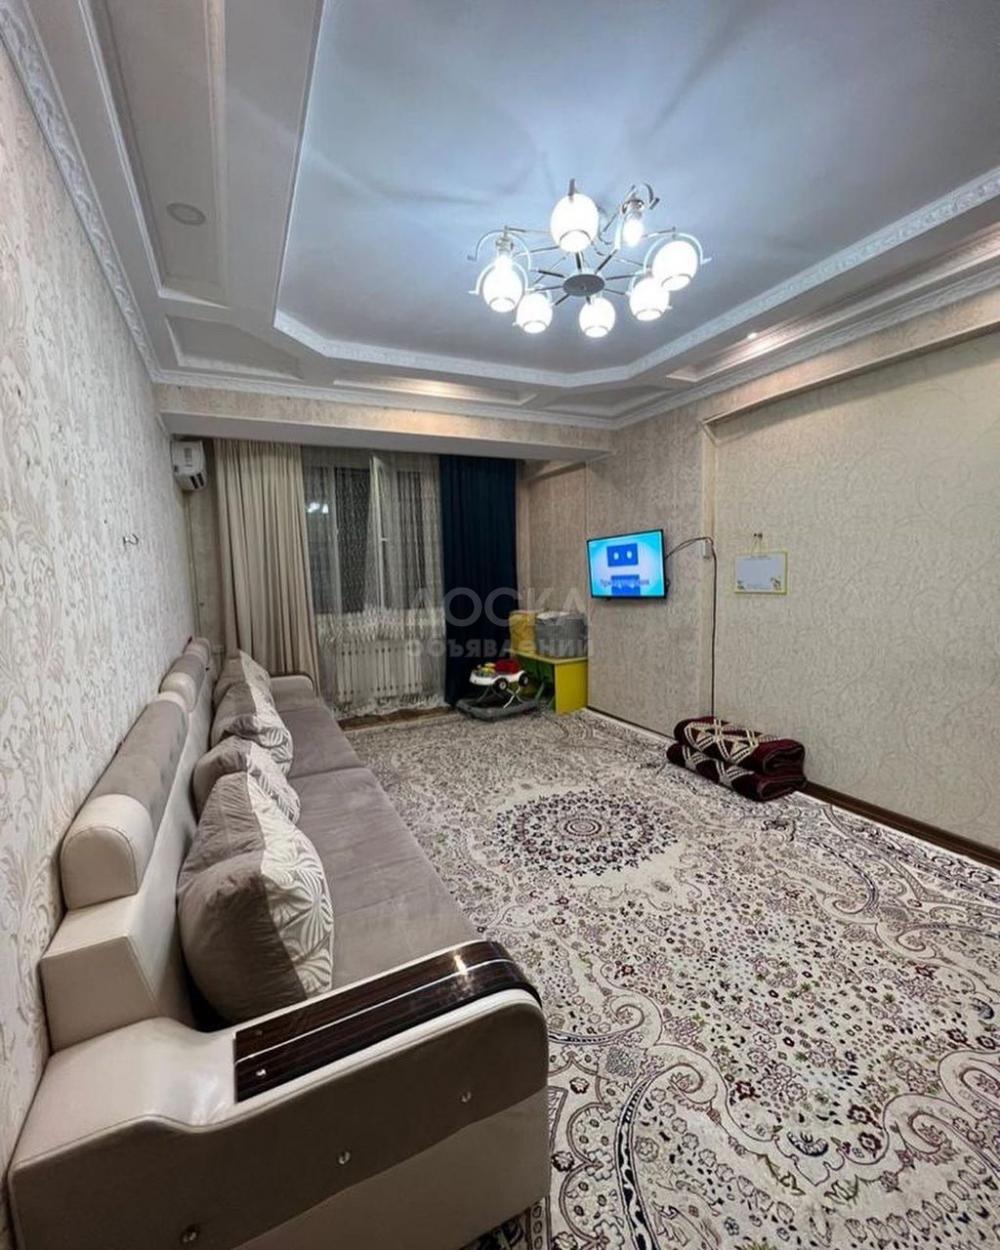 Продаю 2-комнатную квартиру, 68кв. м., этаж - 2/10, Ахунбаева/Чапаева.